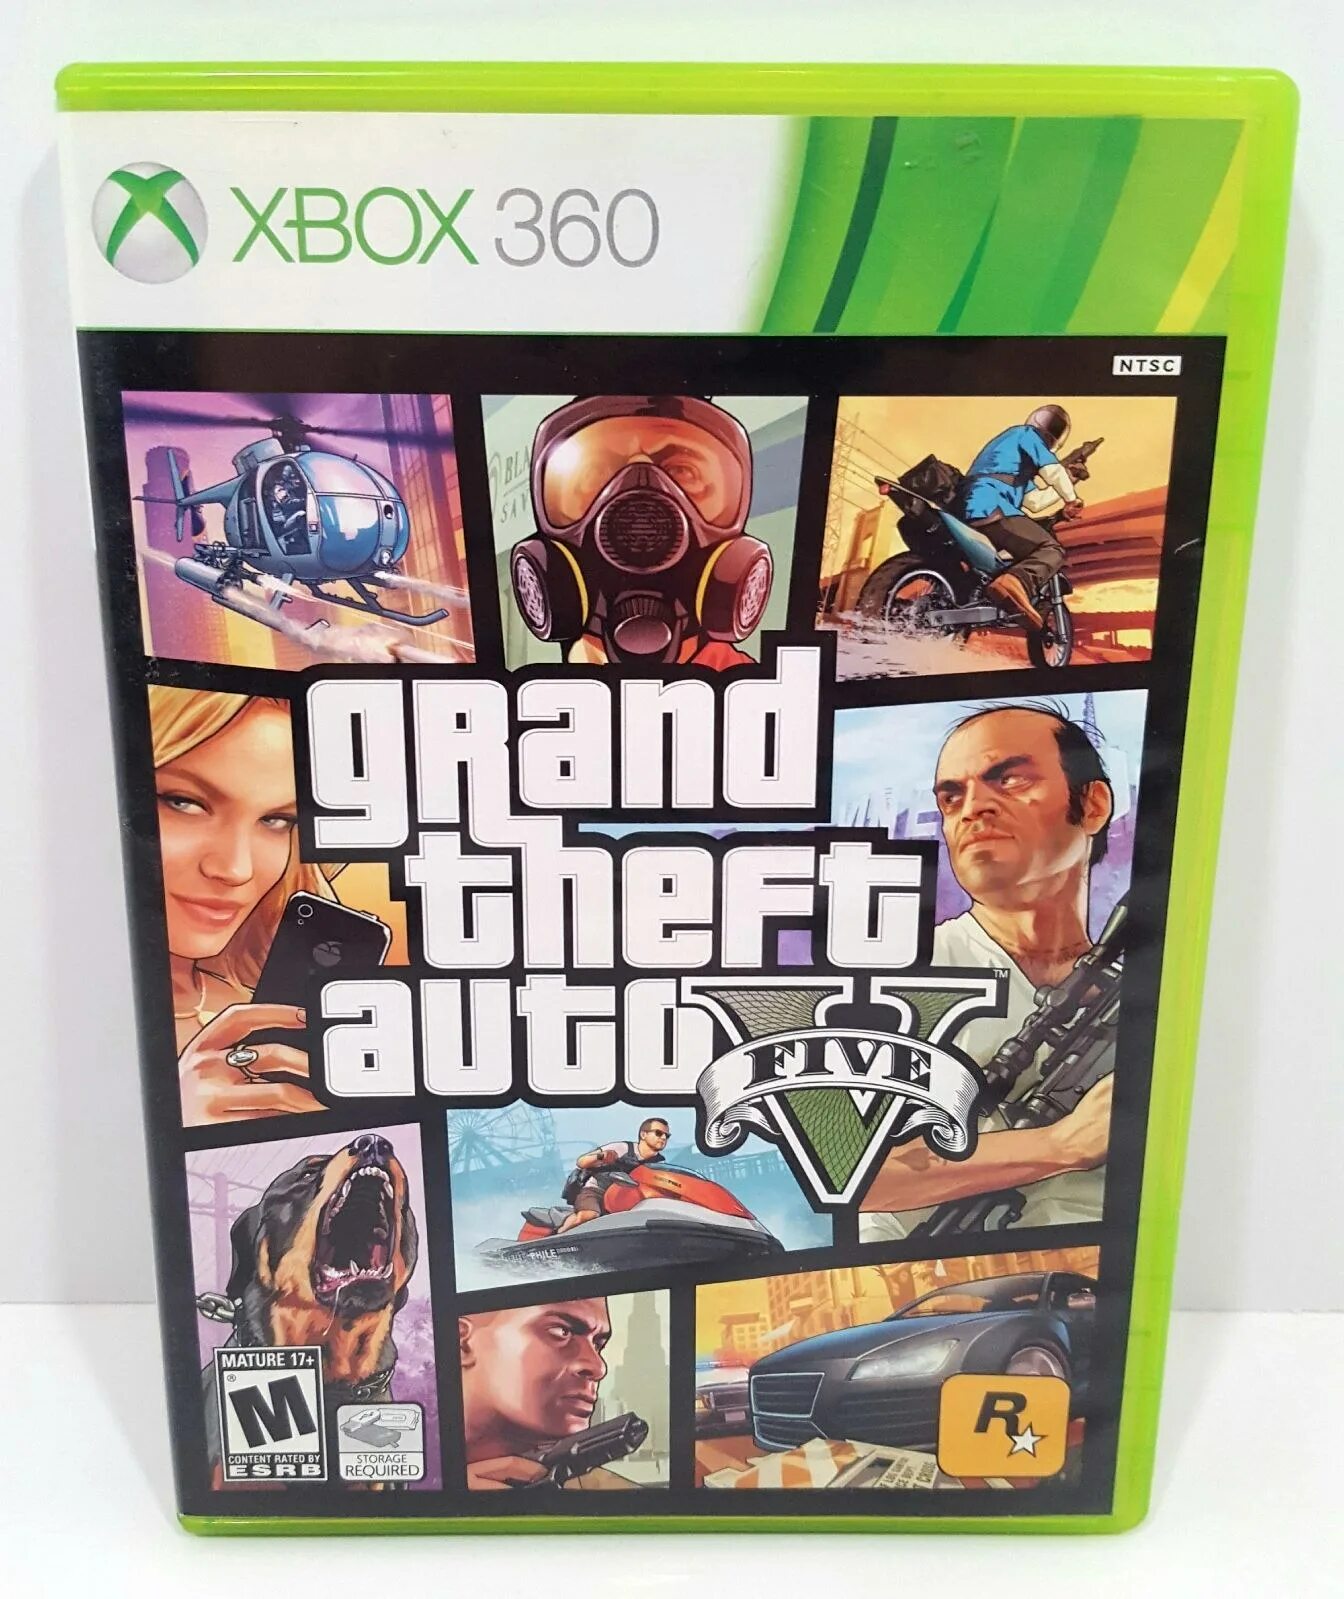 Диск GTA V Xbox 360. GTA 5 Xbox 360 диск. Grand Theft auto v (Xbox 360). GTA 5 на Икс бокс 360. Xbox 360 игры гта 5